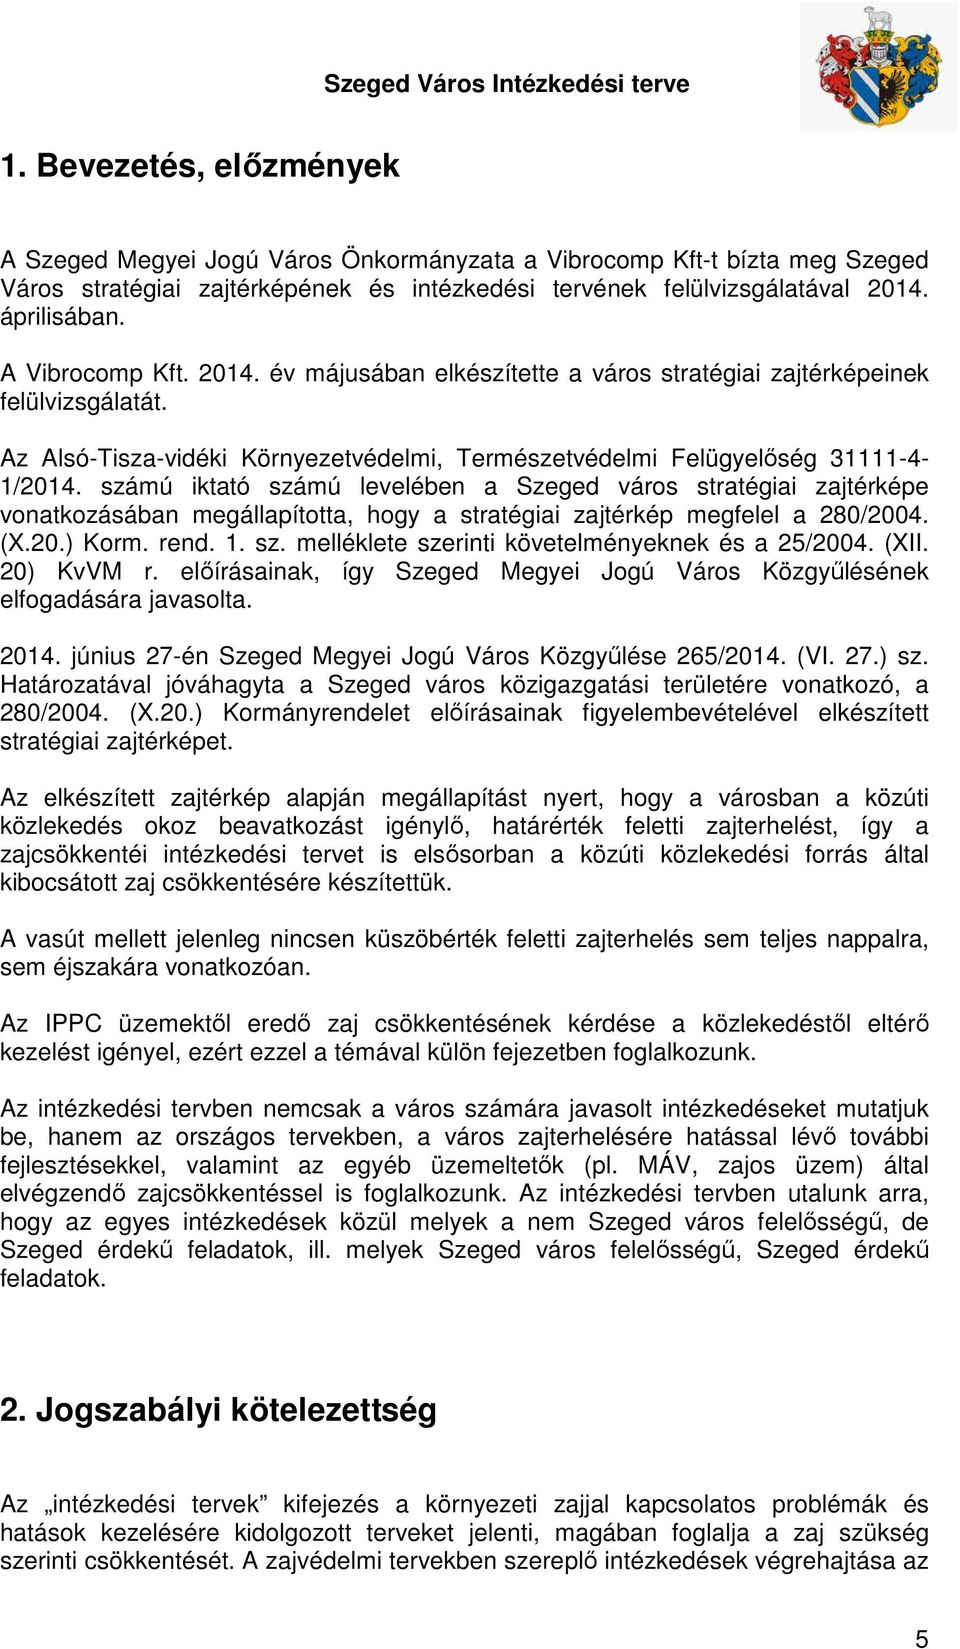 számú iktató számú levelében a Szeged város stratégiai zajtérképe vonatkozásában megállapította, hogy a stratégiai zajtérkép megfelel a 280/2004. (X.20.) Korm. rend. 1. sz. melléklete szerinti követelményeknek és a 25/2004.